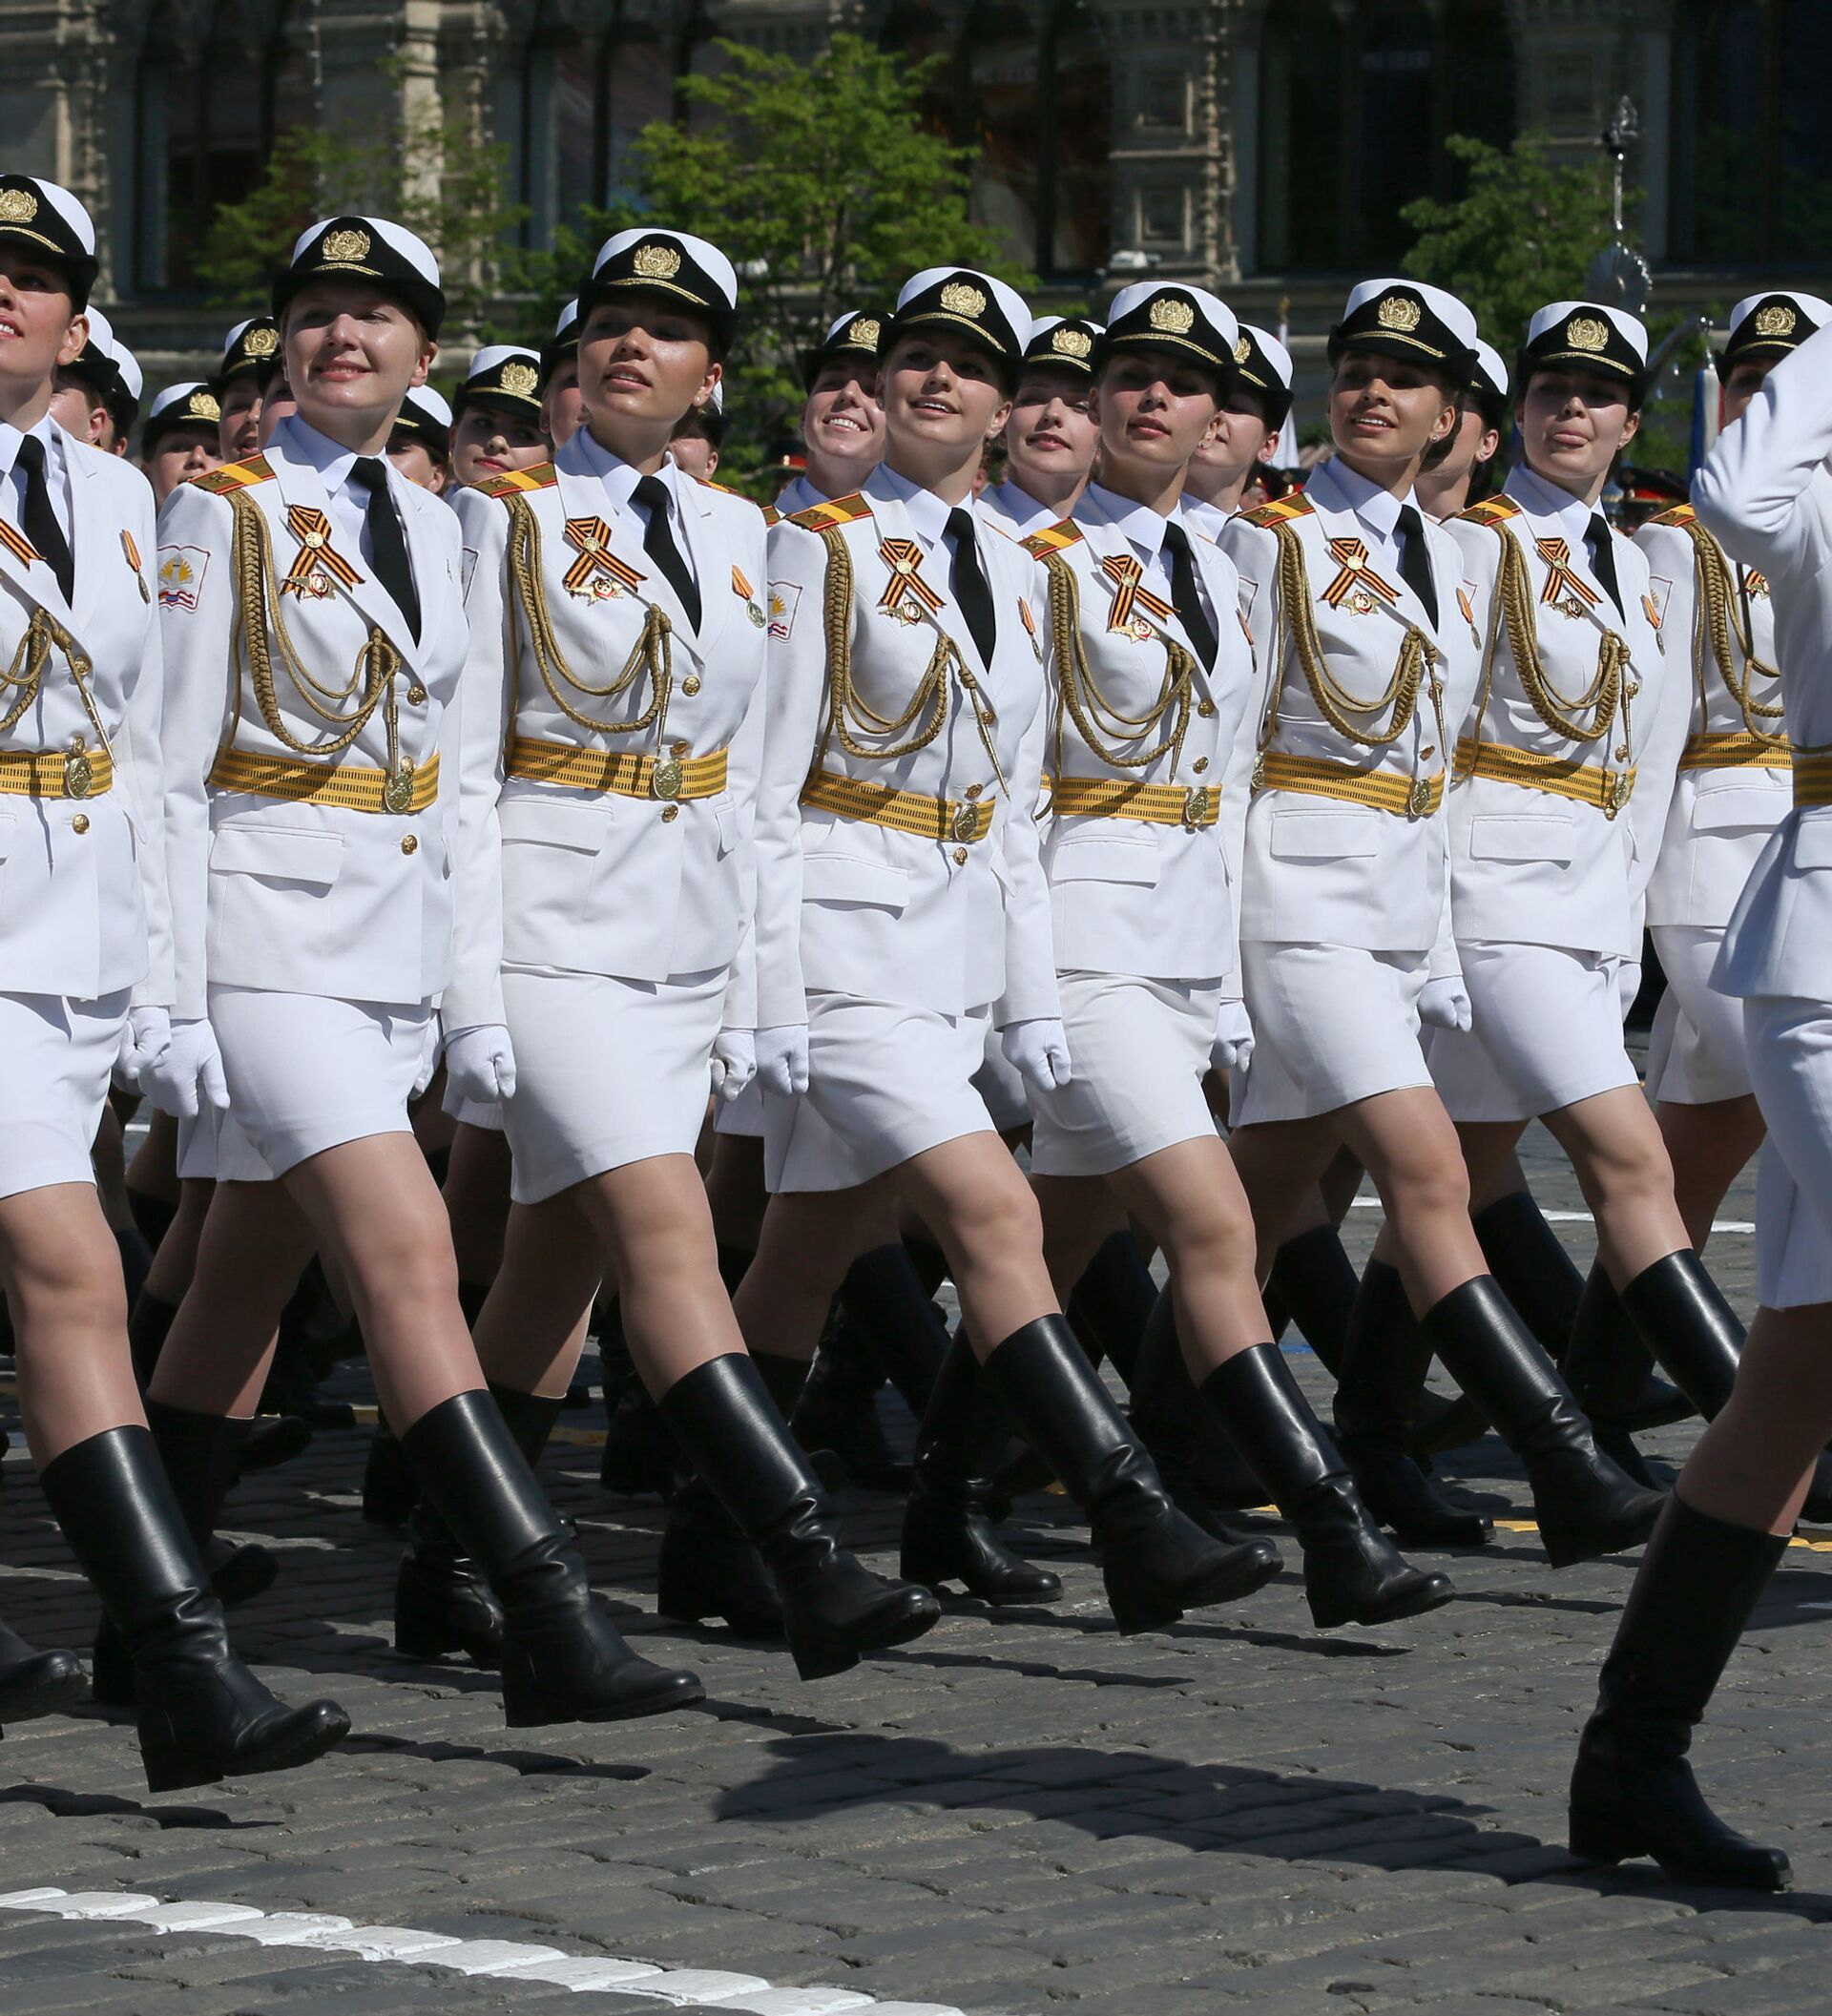 Mujeres guerreras: el uniforme militar femenino de diferentes